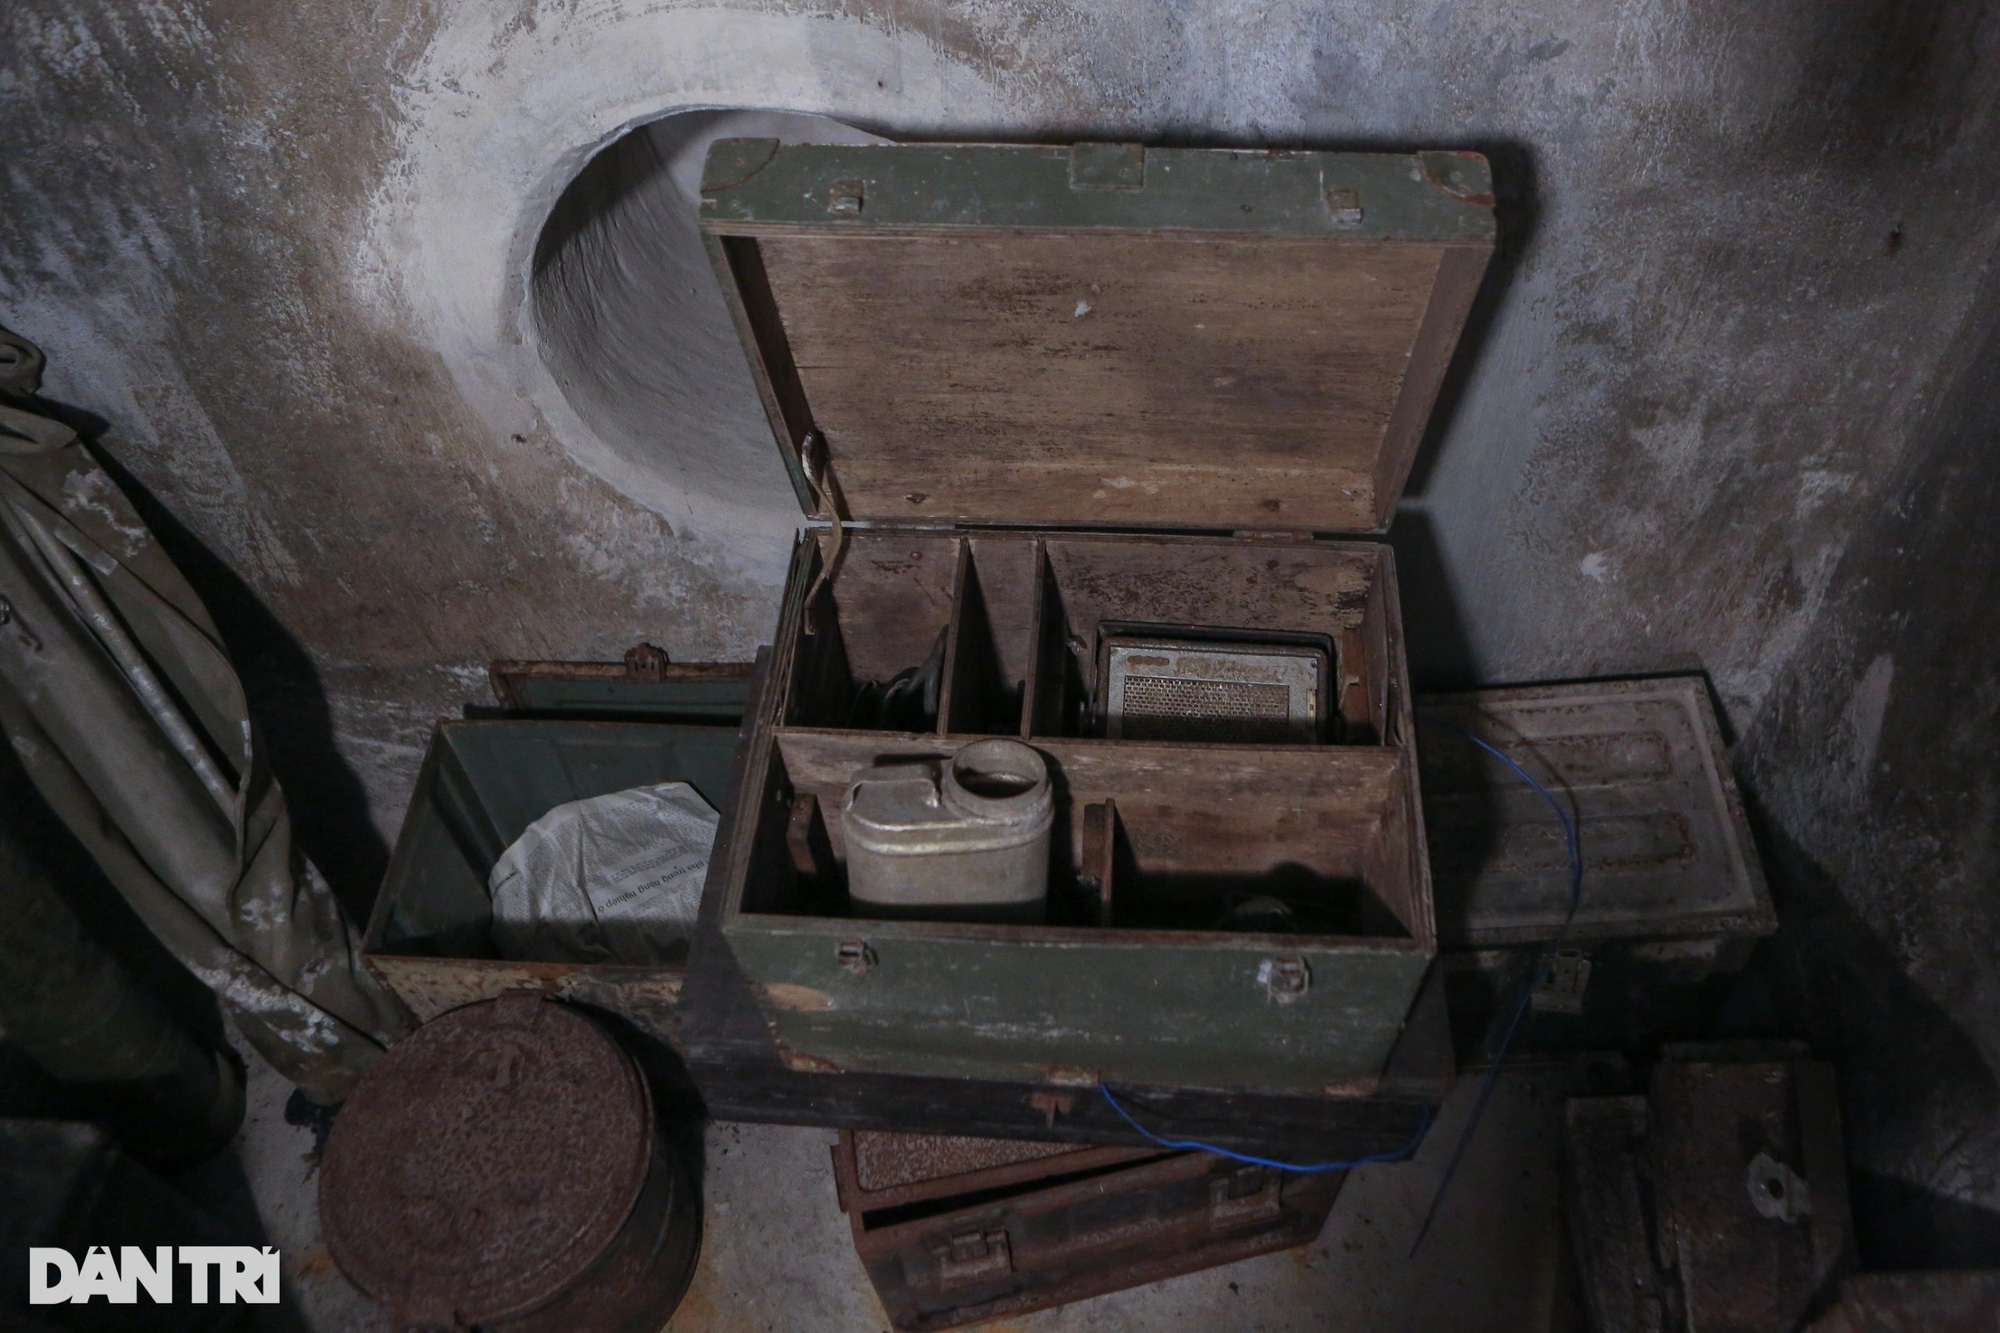 Căn hầm bí mật chứa gần 2 tấn vũ khí nằm giữa lòng TPHCM - Ảnh 7.